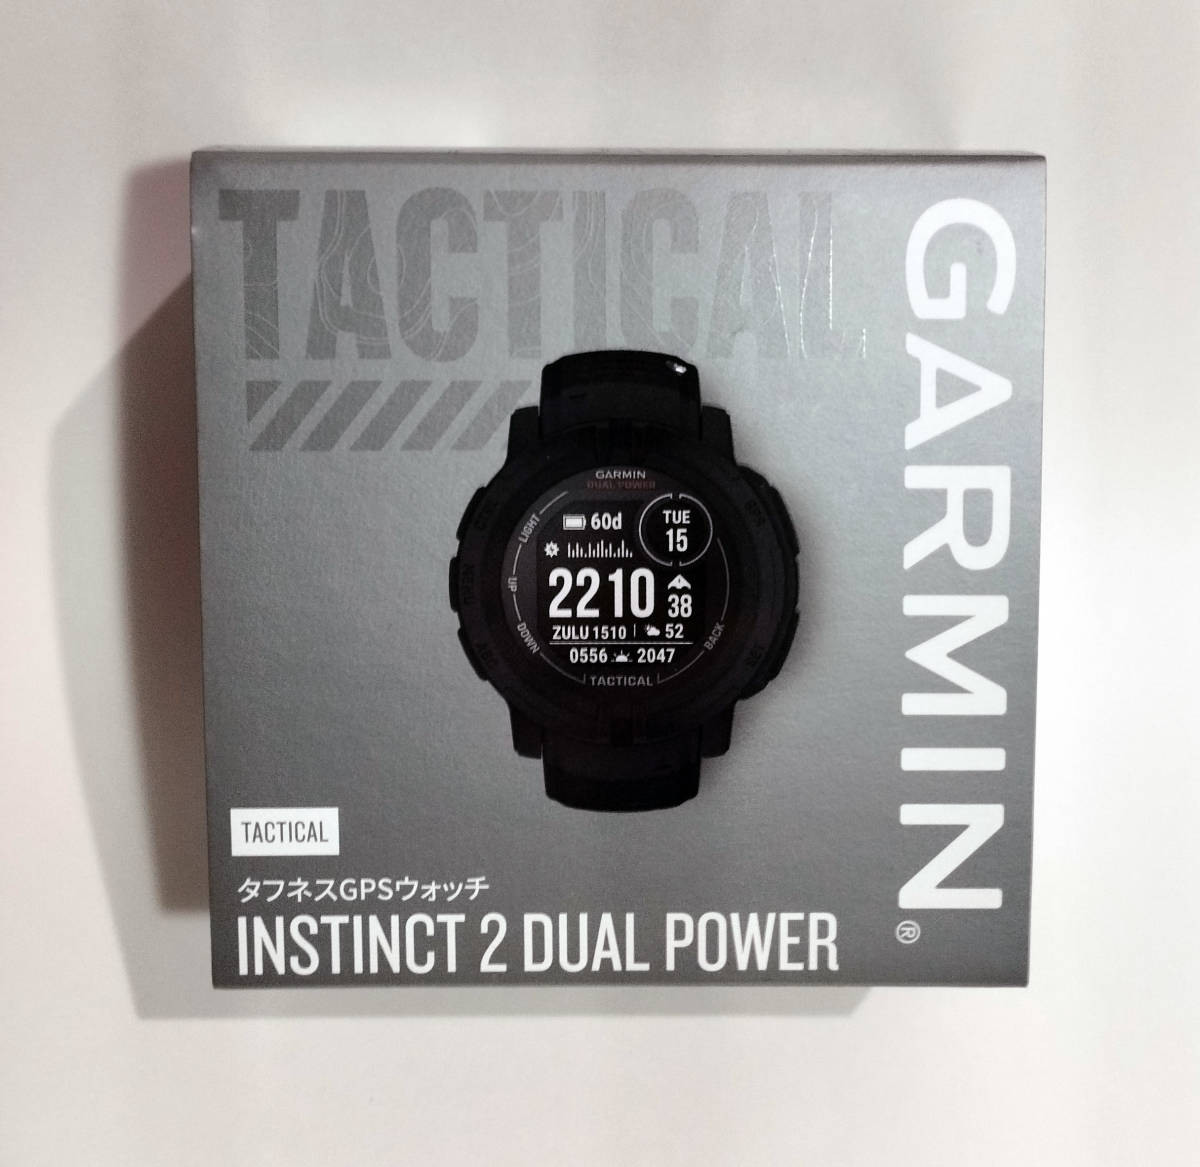 低価格 Power Dual 2 Instinct GARMIN Tactical 新品未開封 日本正規版